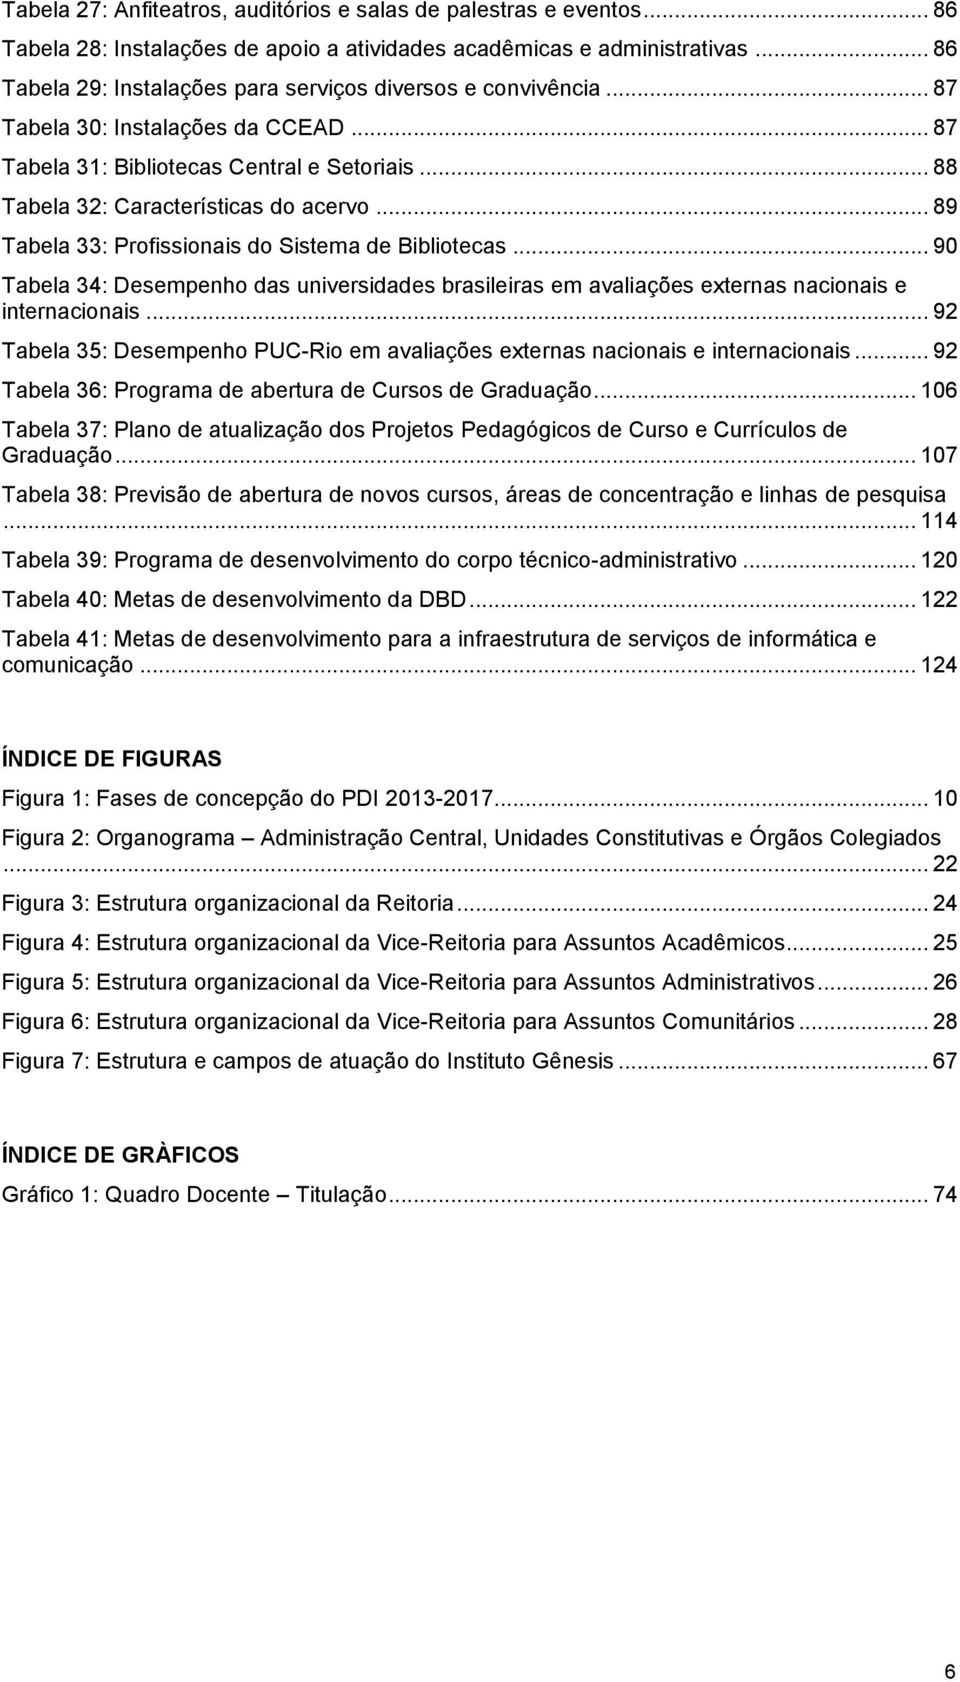 .. 89 Tabela 33: Profissionais do Sistema de Bibliotecas... 90 Tabela 34: Desempenho das universidades brasileiras em avaliações externas nacionais e internacionais.